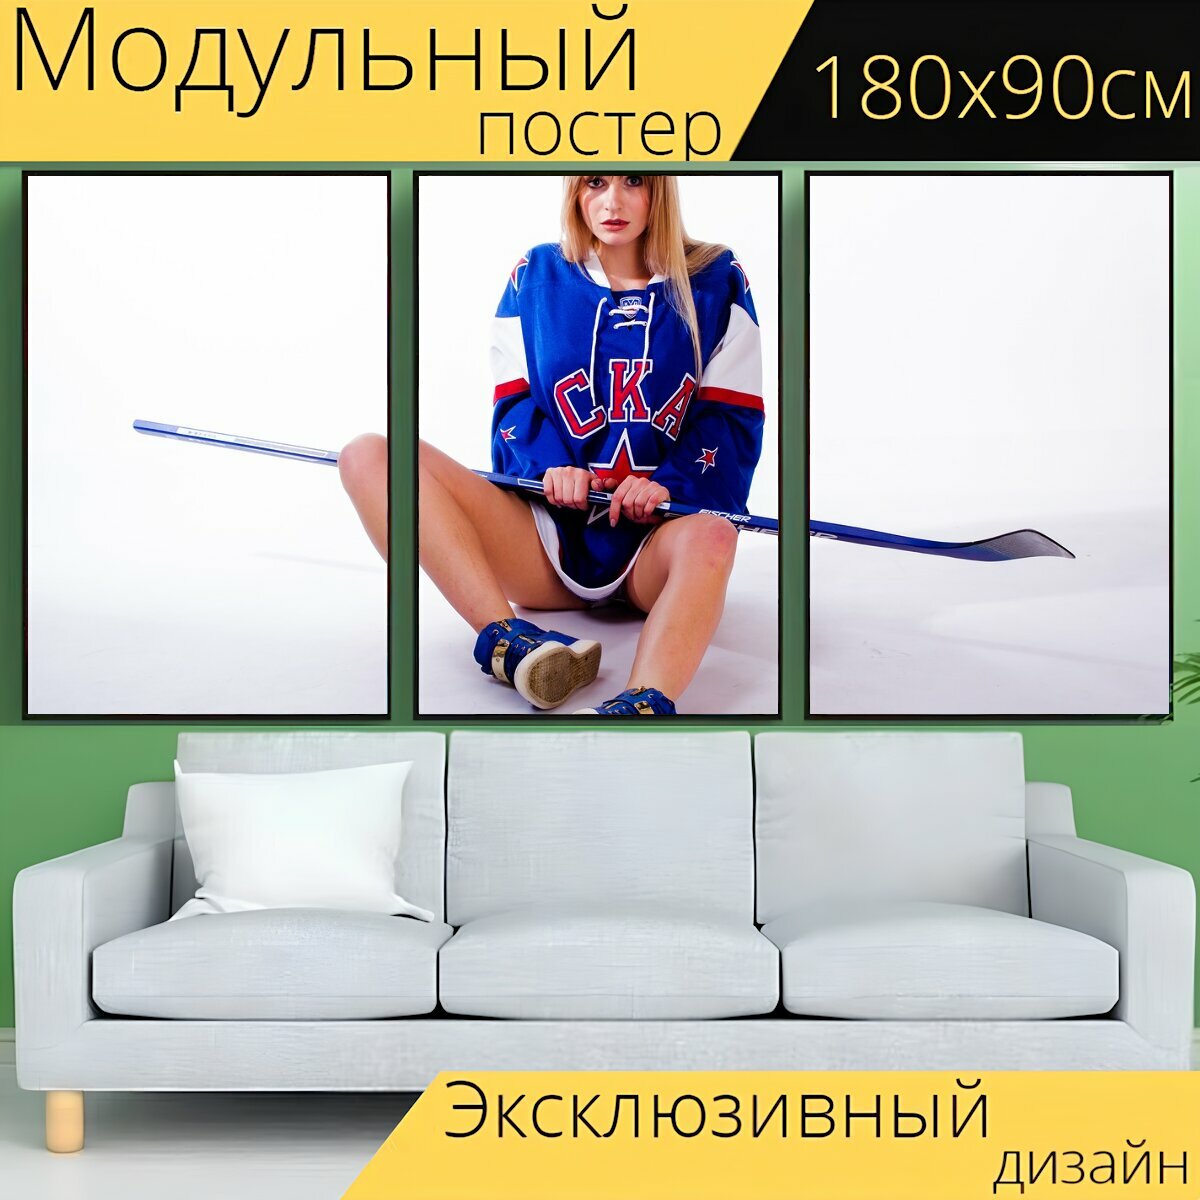 Модульный постер "Женщина, спорт, спортивный" 180 x 90 см. для интерьера